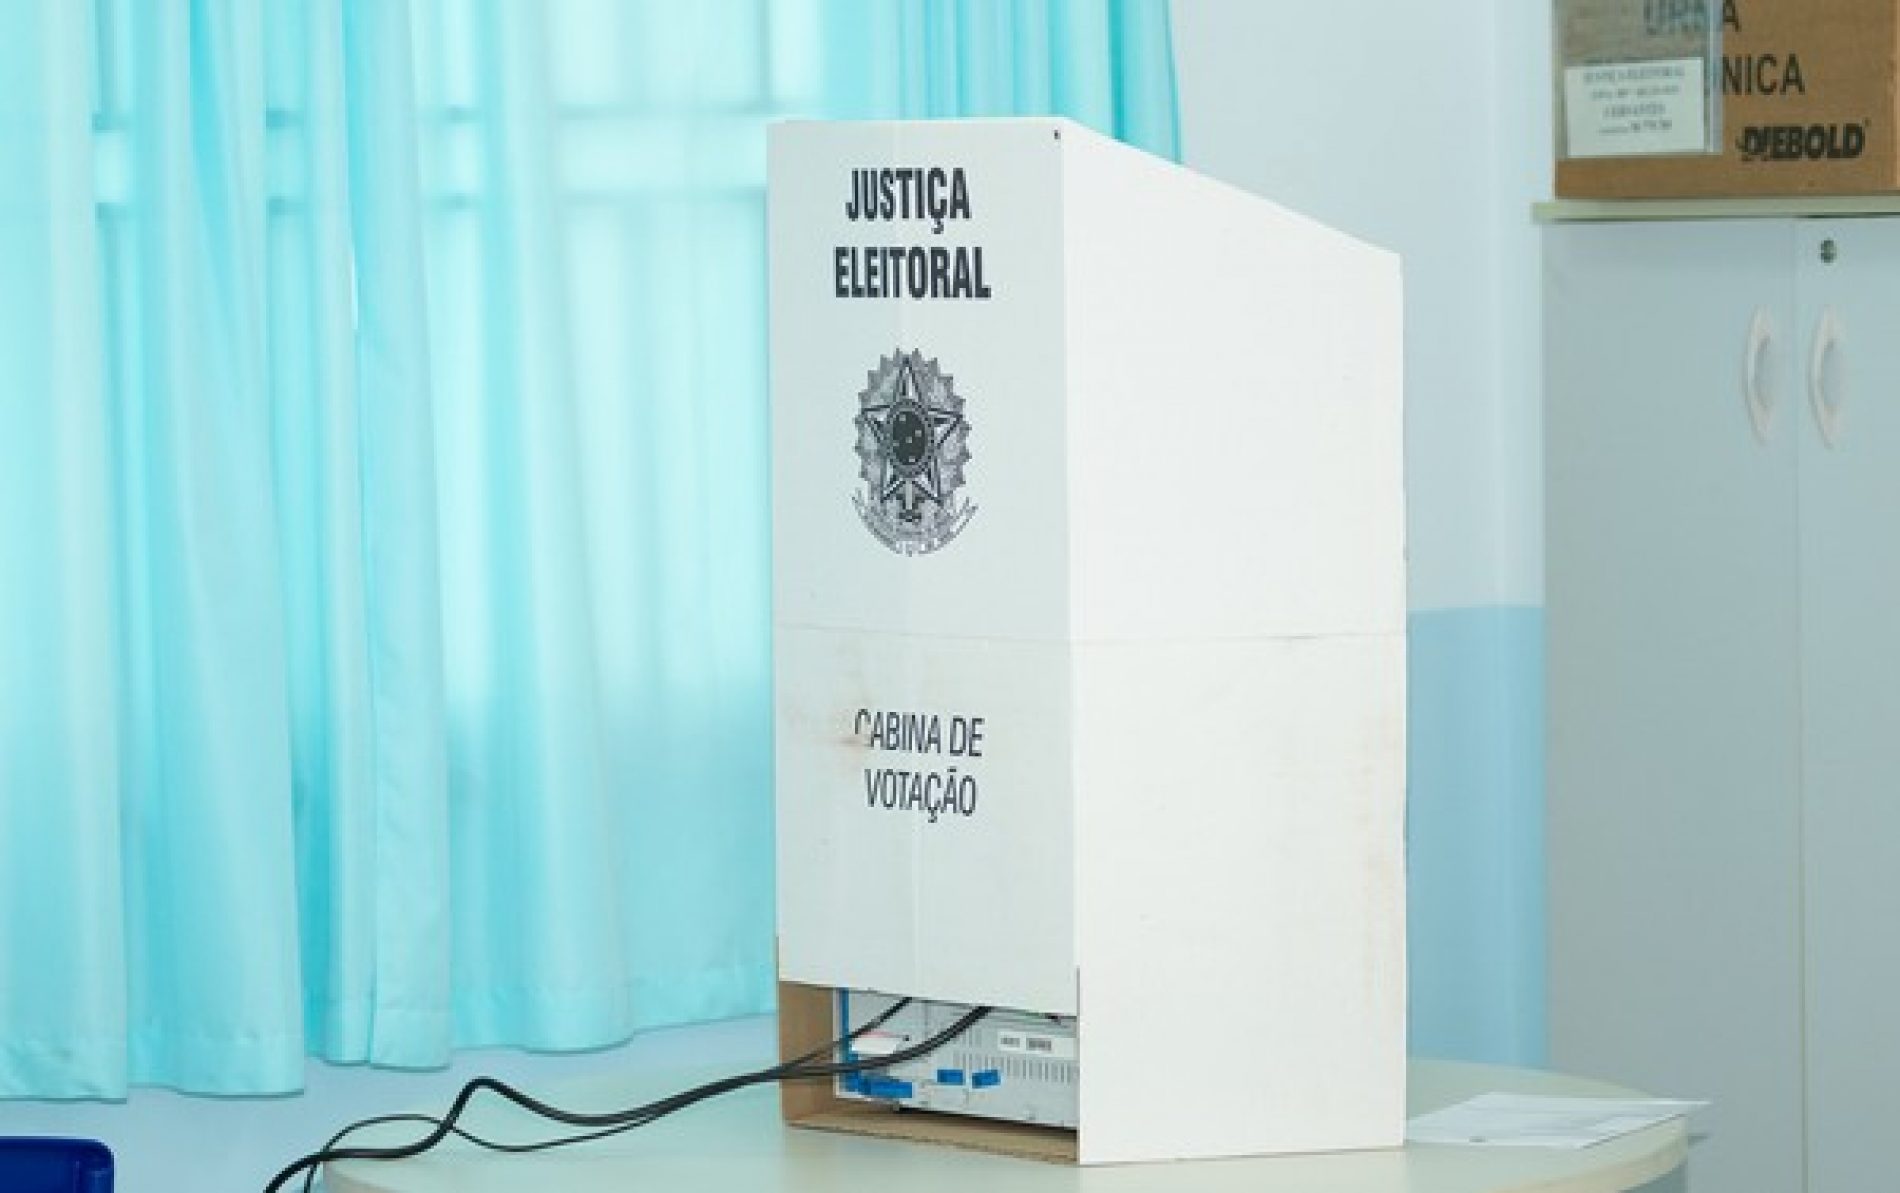 GUAÍRA: TRE marca novas eleições, após cassar candidaturas de prefeito e vice eleitos em 2020